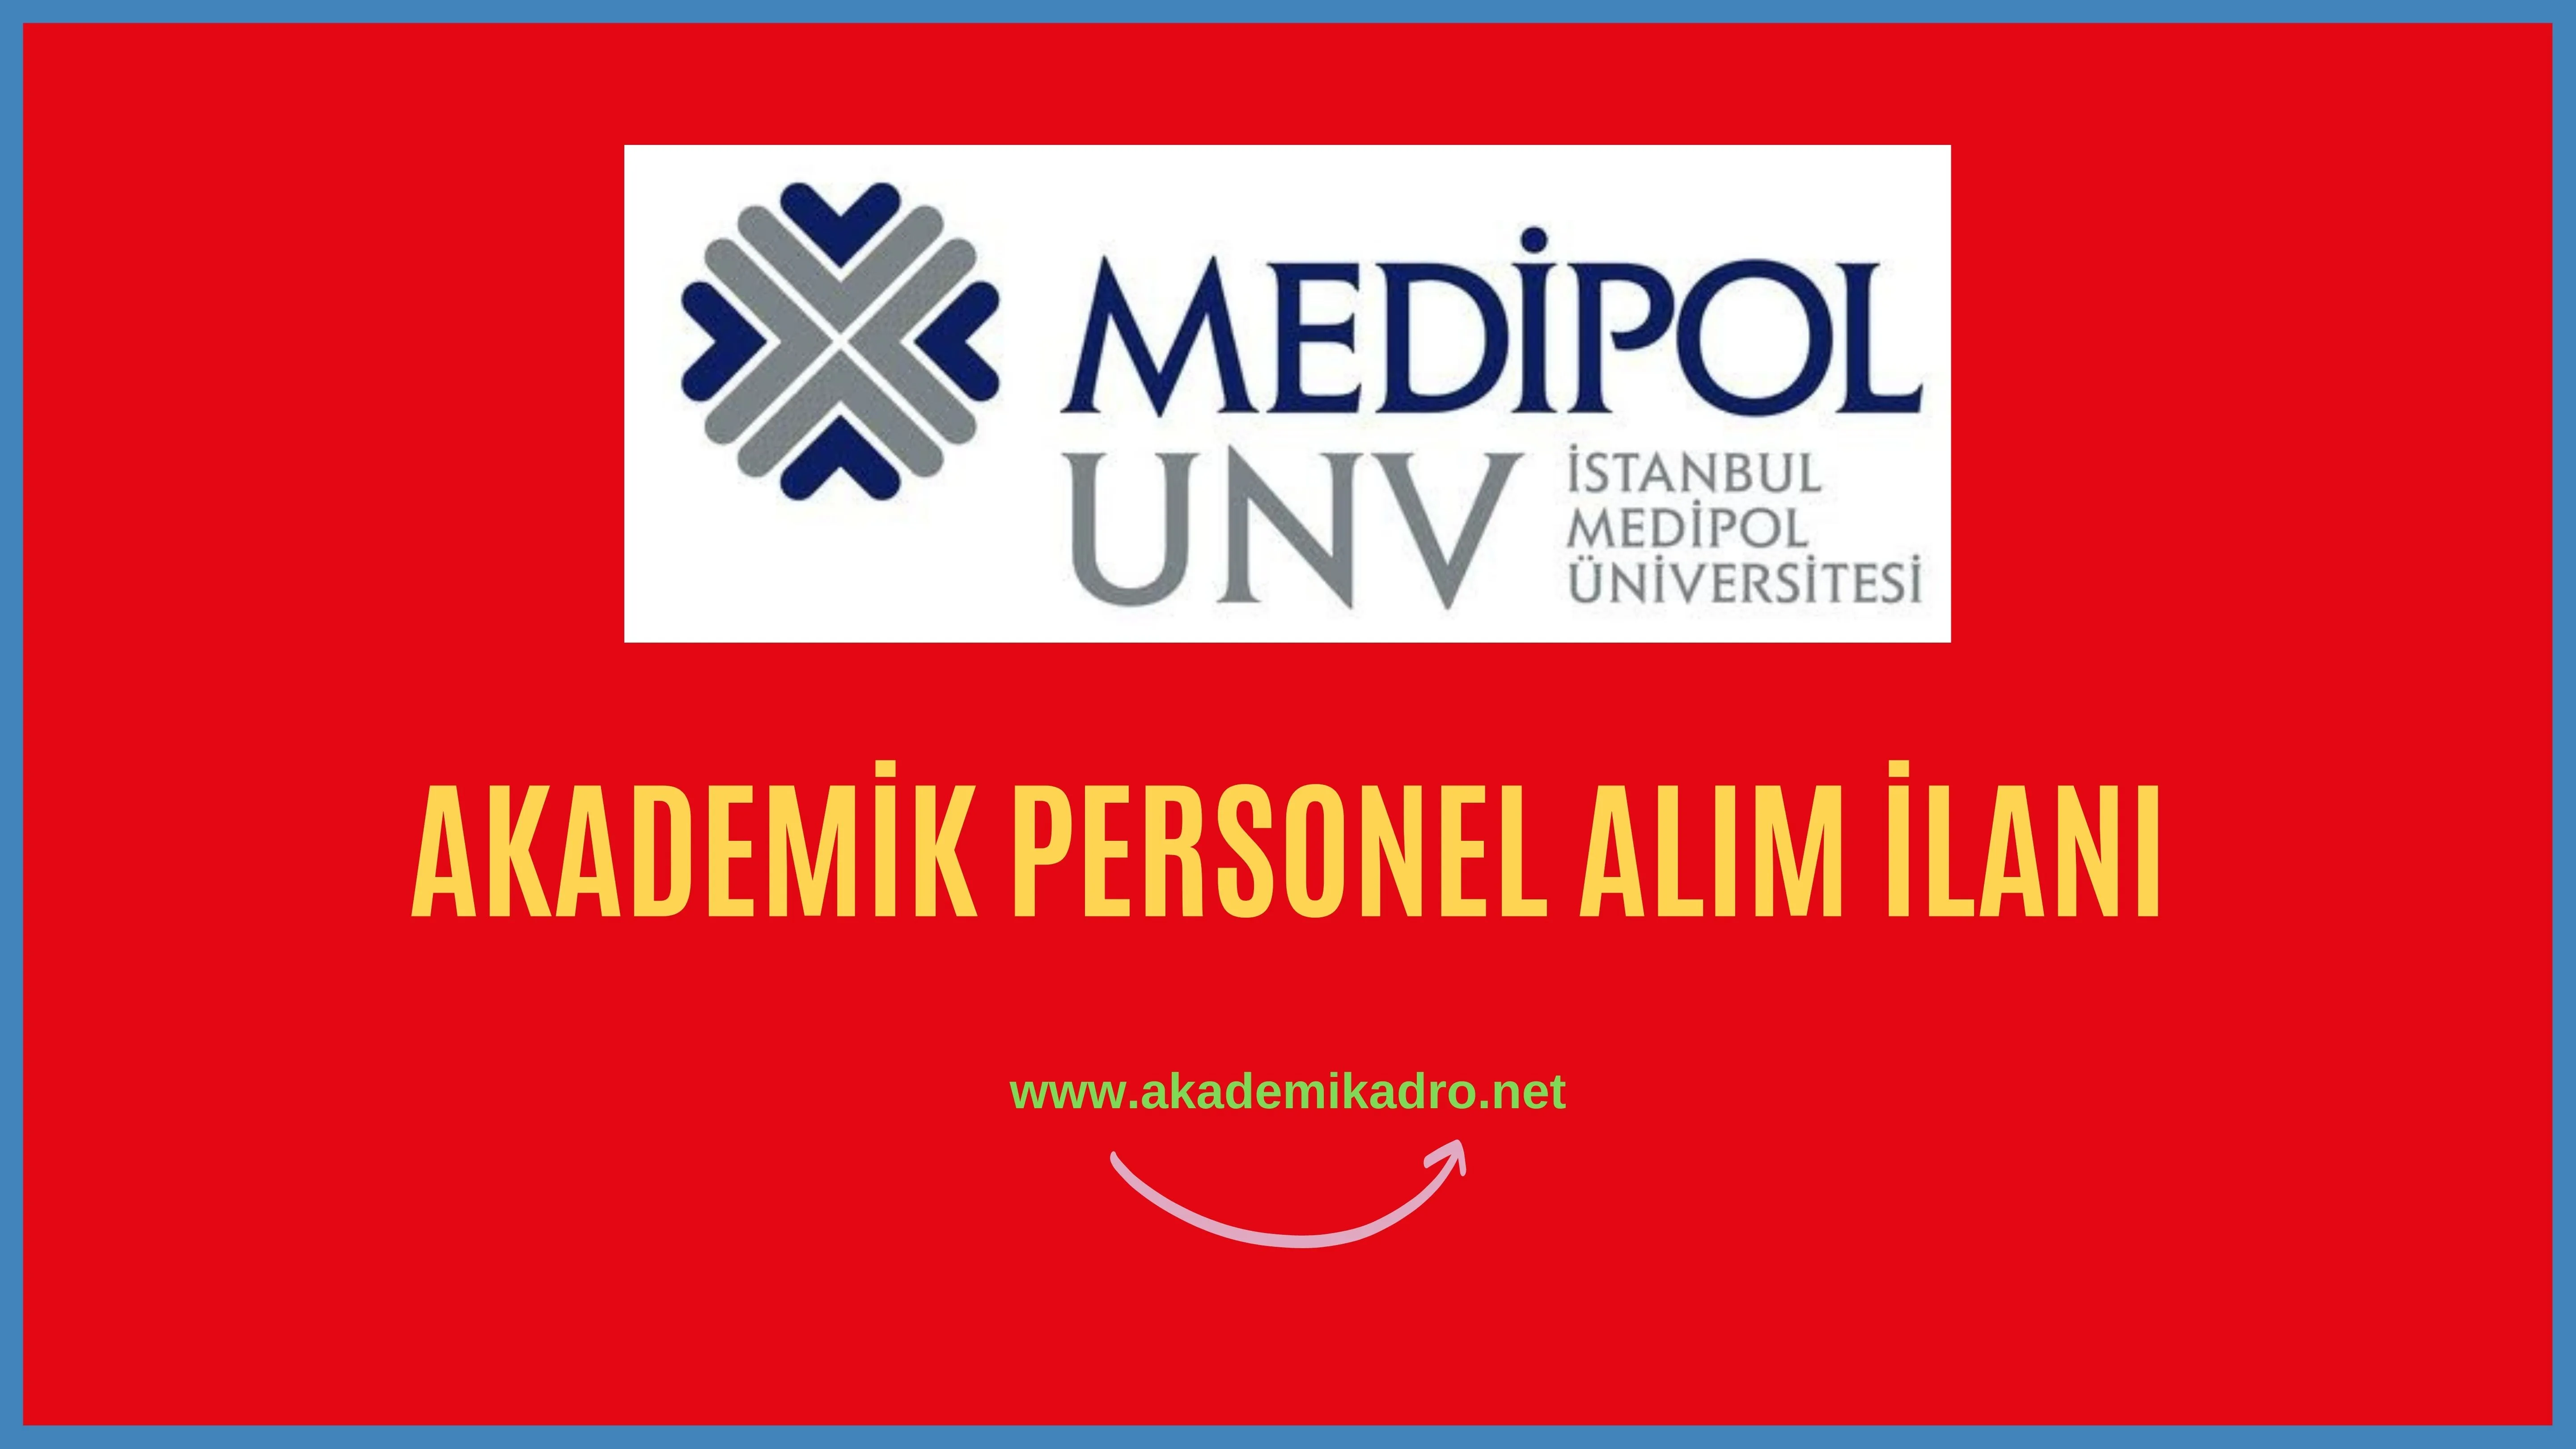 İstanbul Medipol Üniversitesi birçok alandan 67 akademik personel alacak. Son başvuru tarihi 